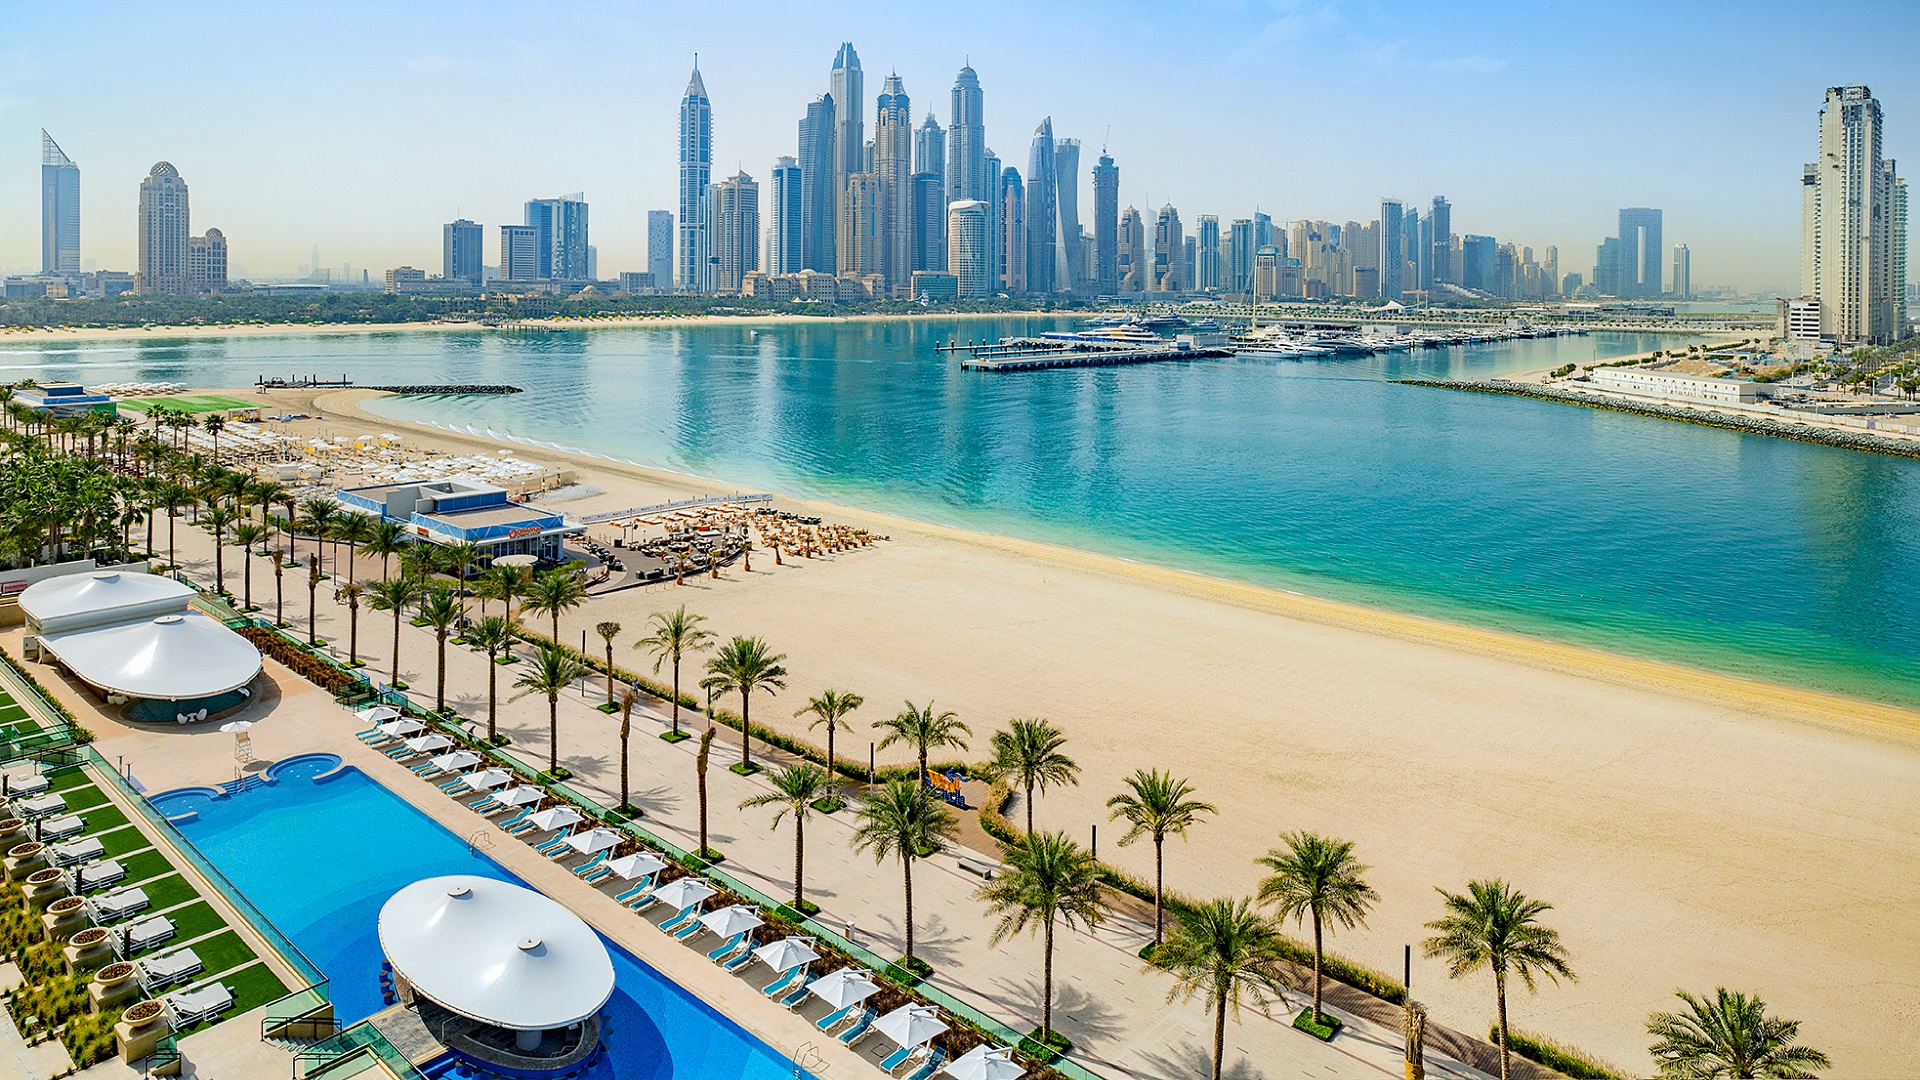 The new hotel on the Dubai Palm - Hilton Dubai Palm Jumeirah!